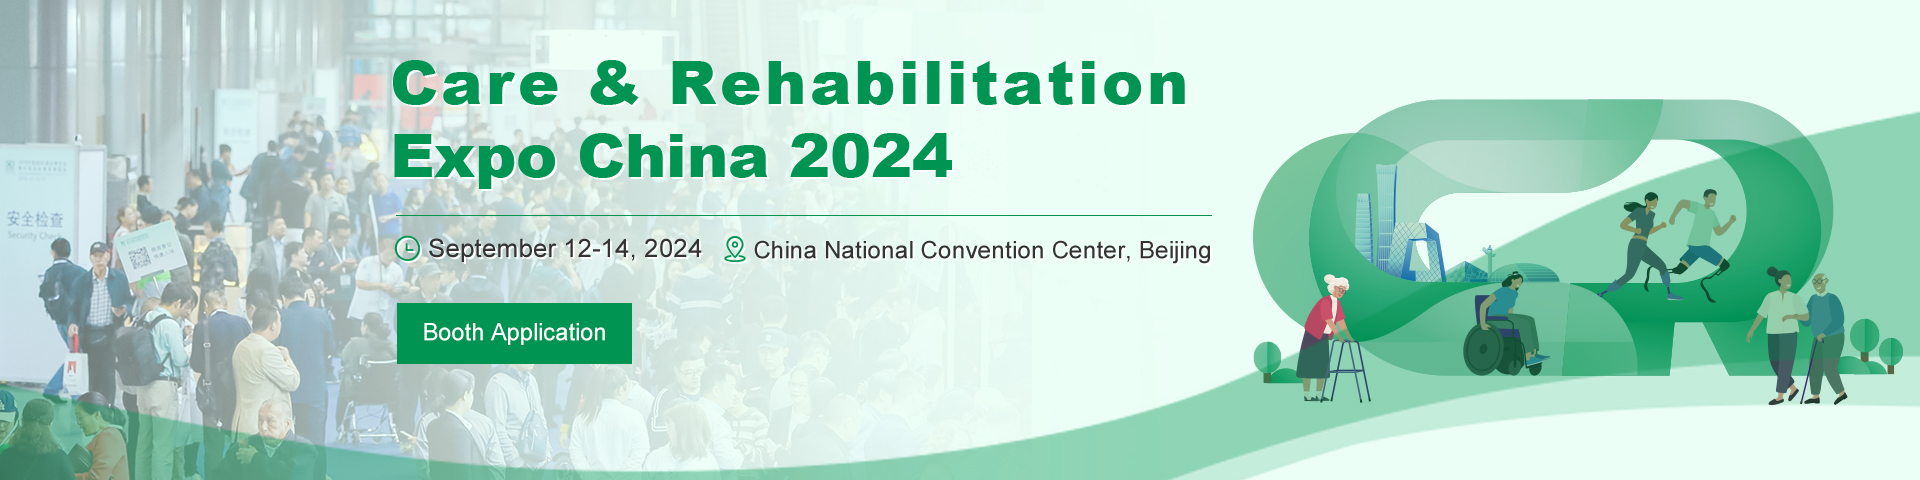 Care & Rehabilitation Expo China 2024, Beijing, China